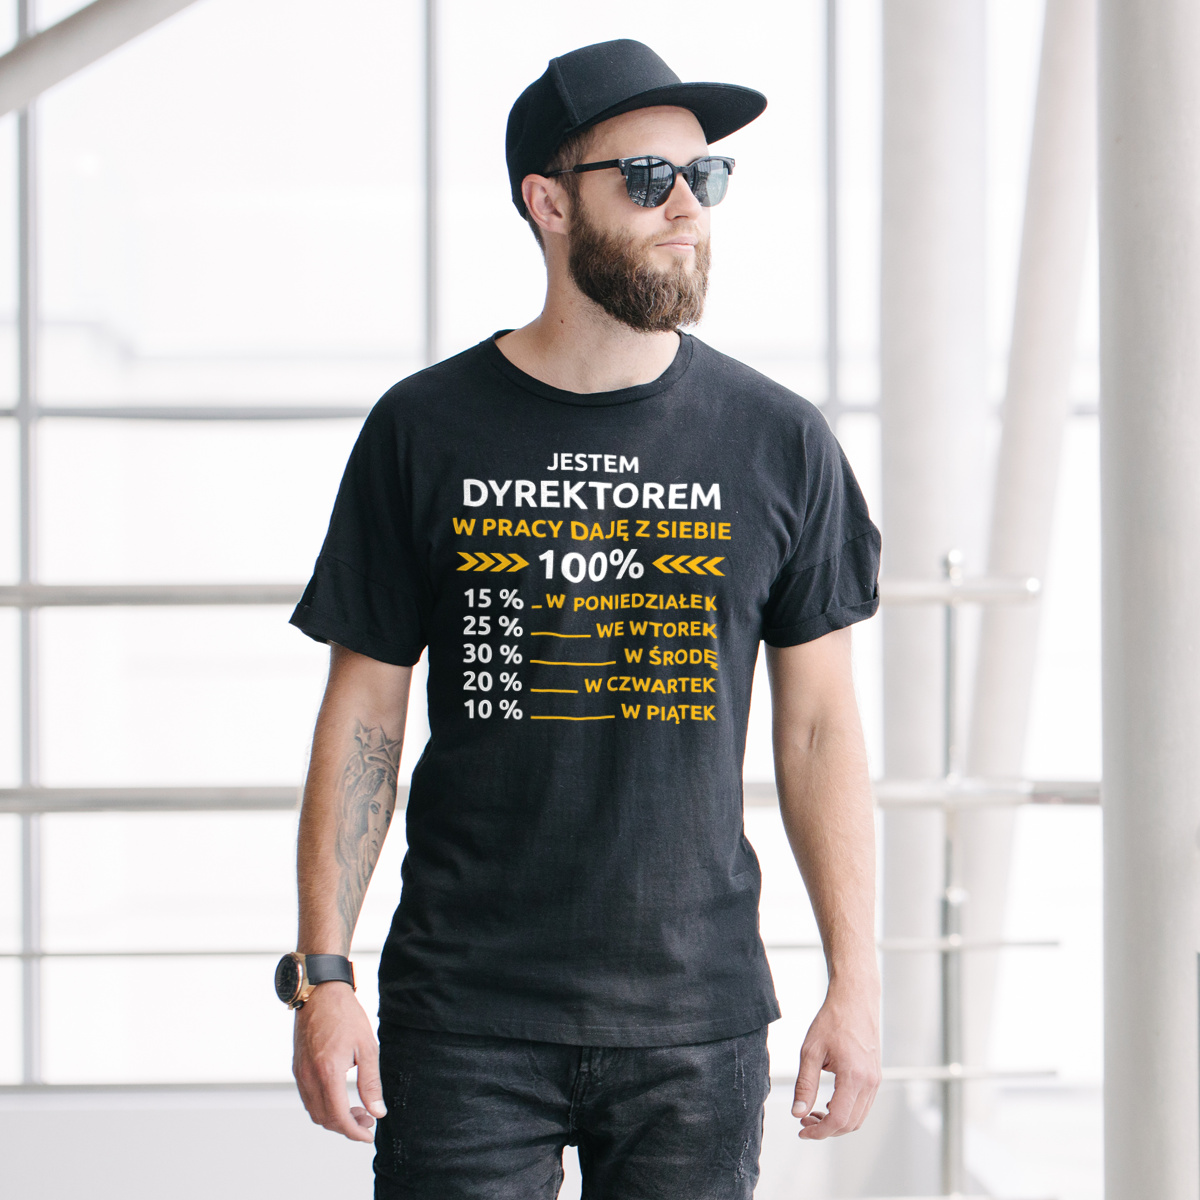 Dyrektor W Pracy Daje Z Siebie 100%  - Męska Koszulka Czarna